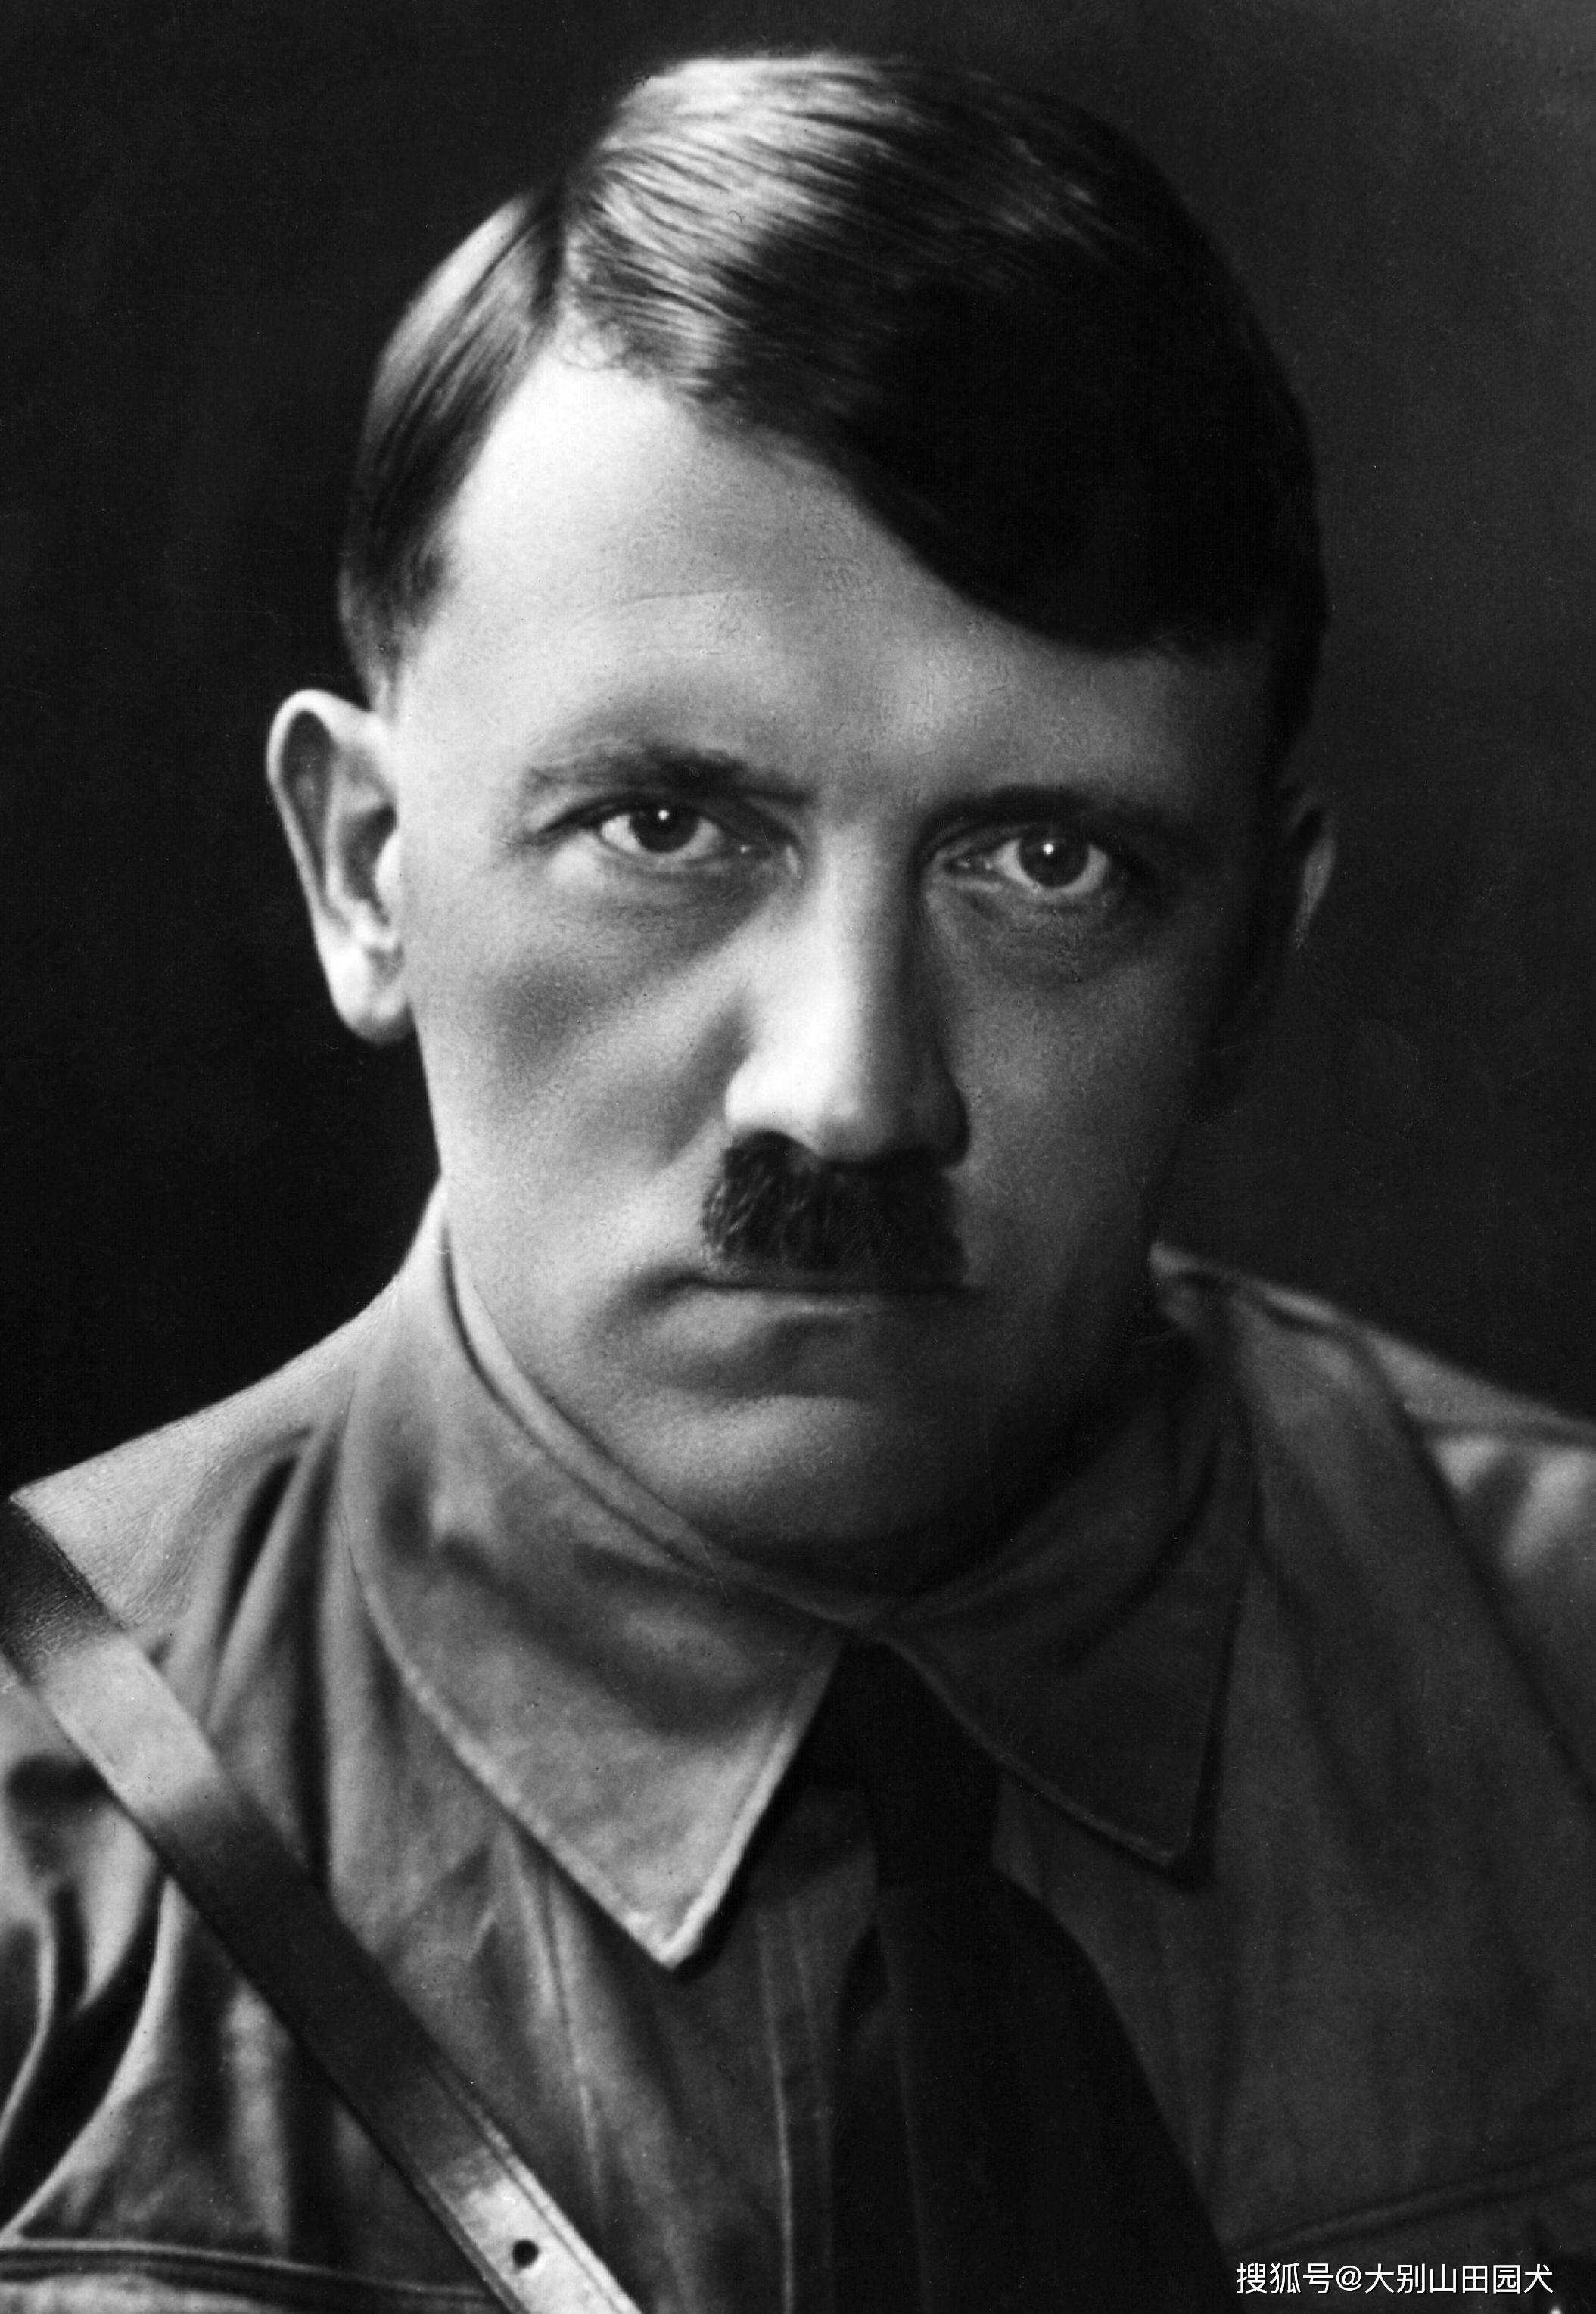 阿道夫·希特勒,纳粹德国的元首,是二战中欧洲的主要战犯